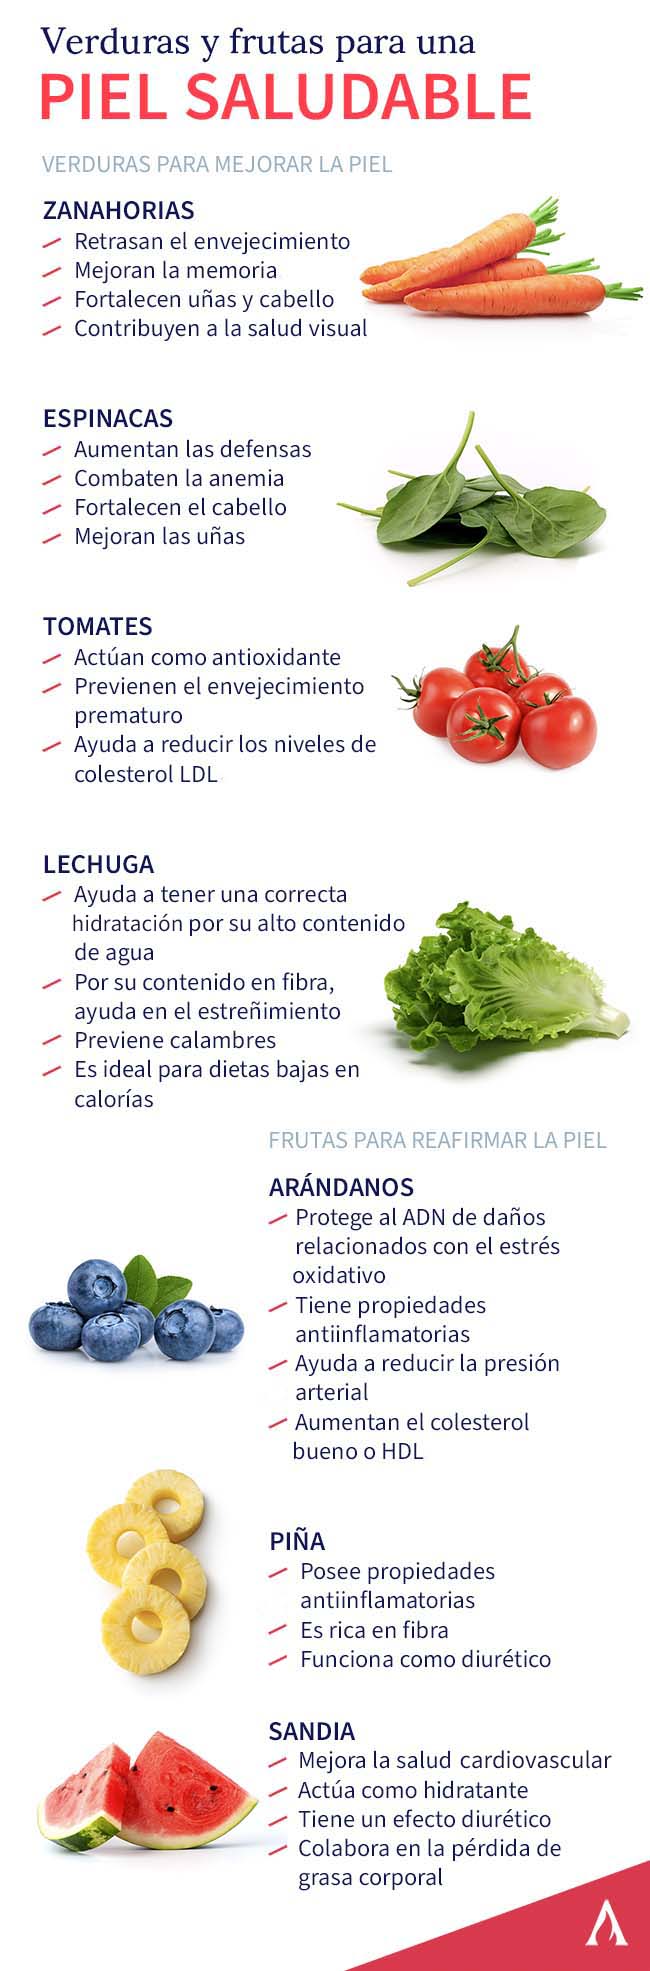 verduras-y-frutas-saludables-para-una-piel-saludable